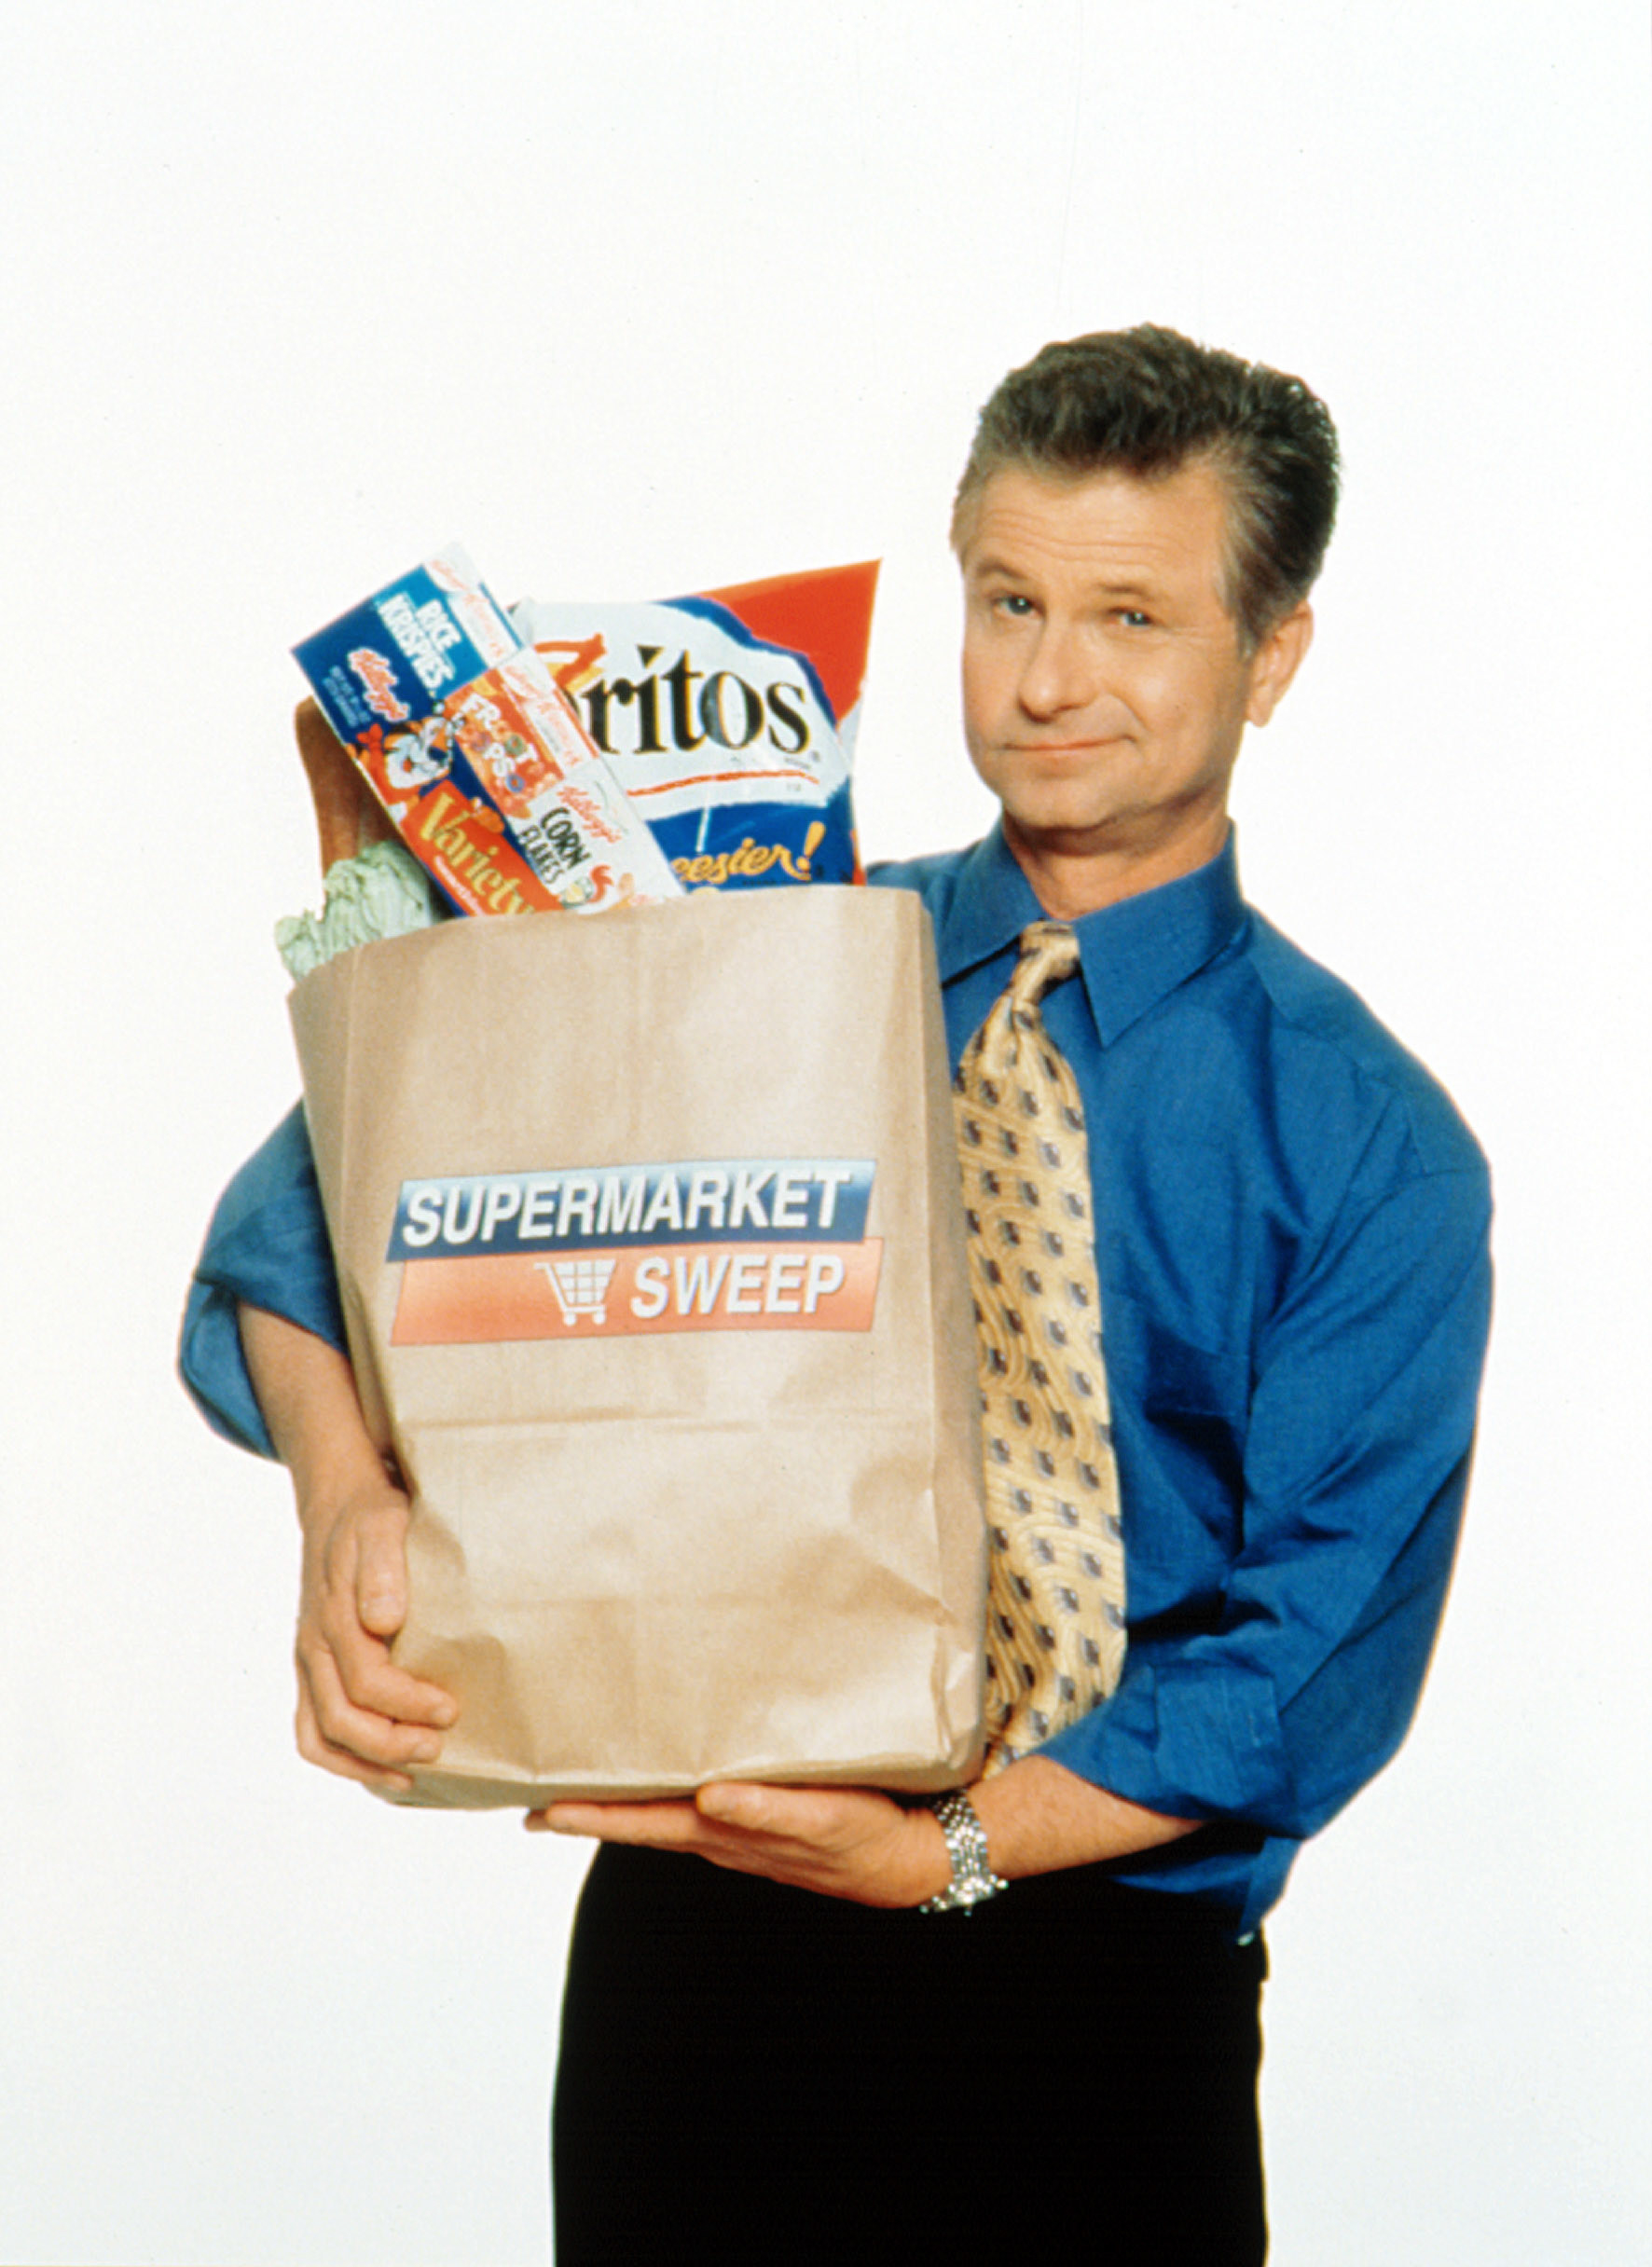 David hosts a branded bag of groceries